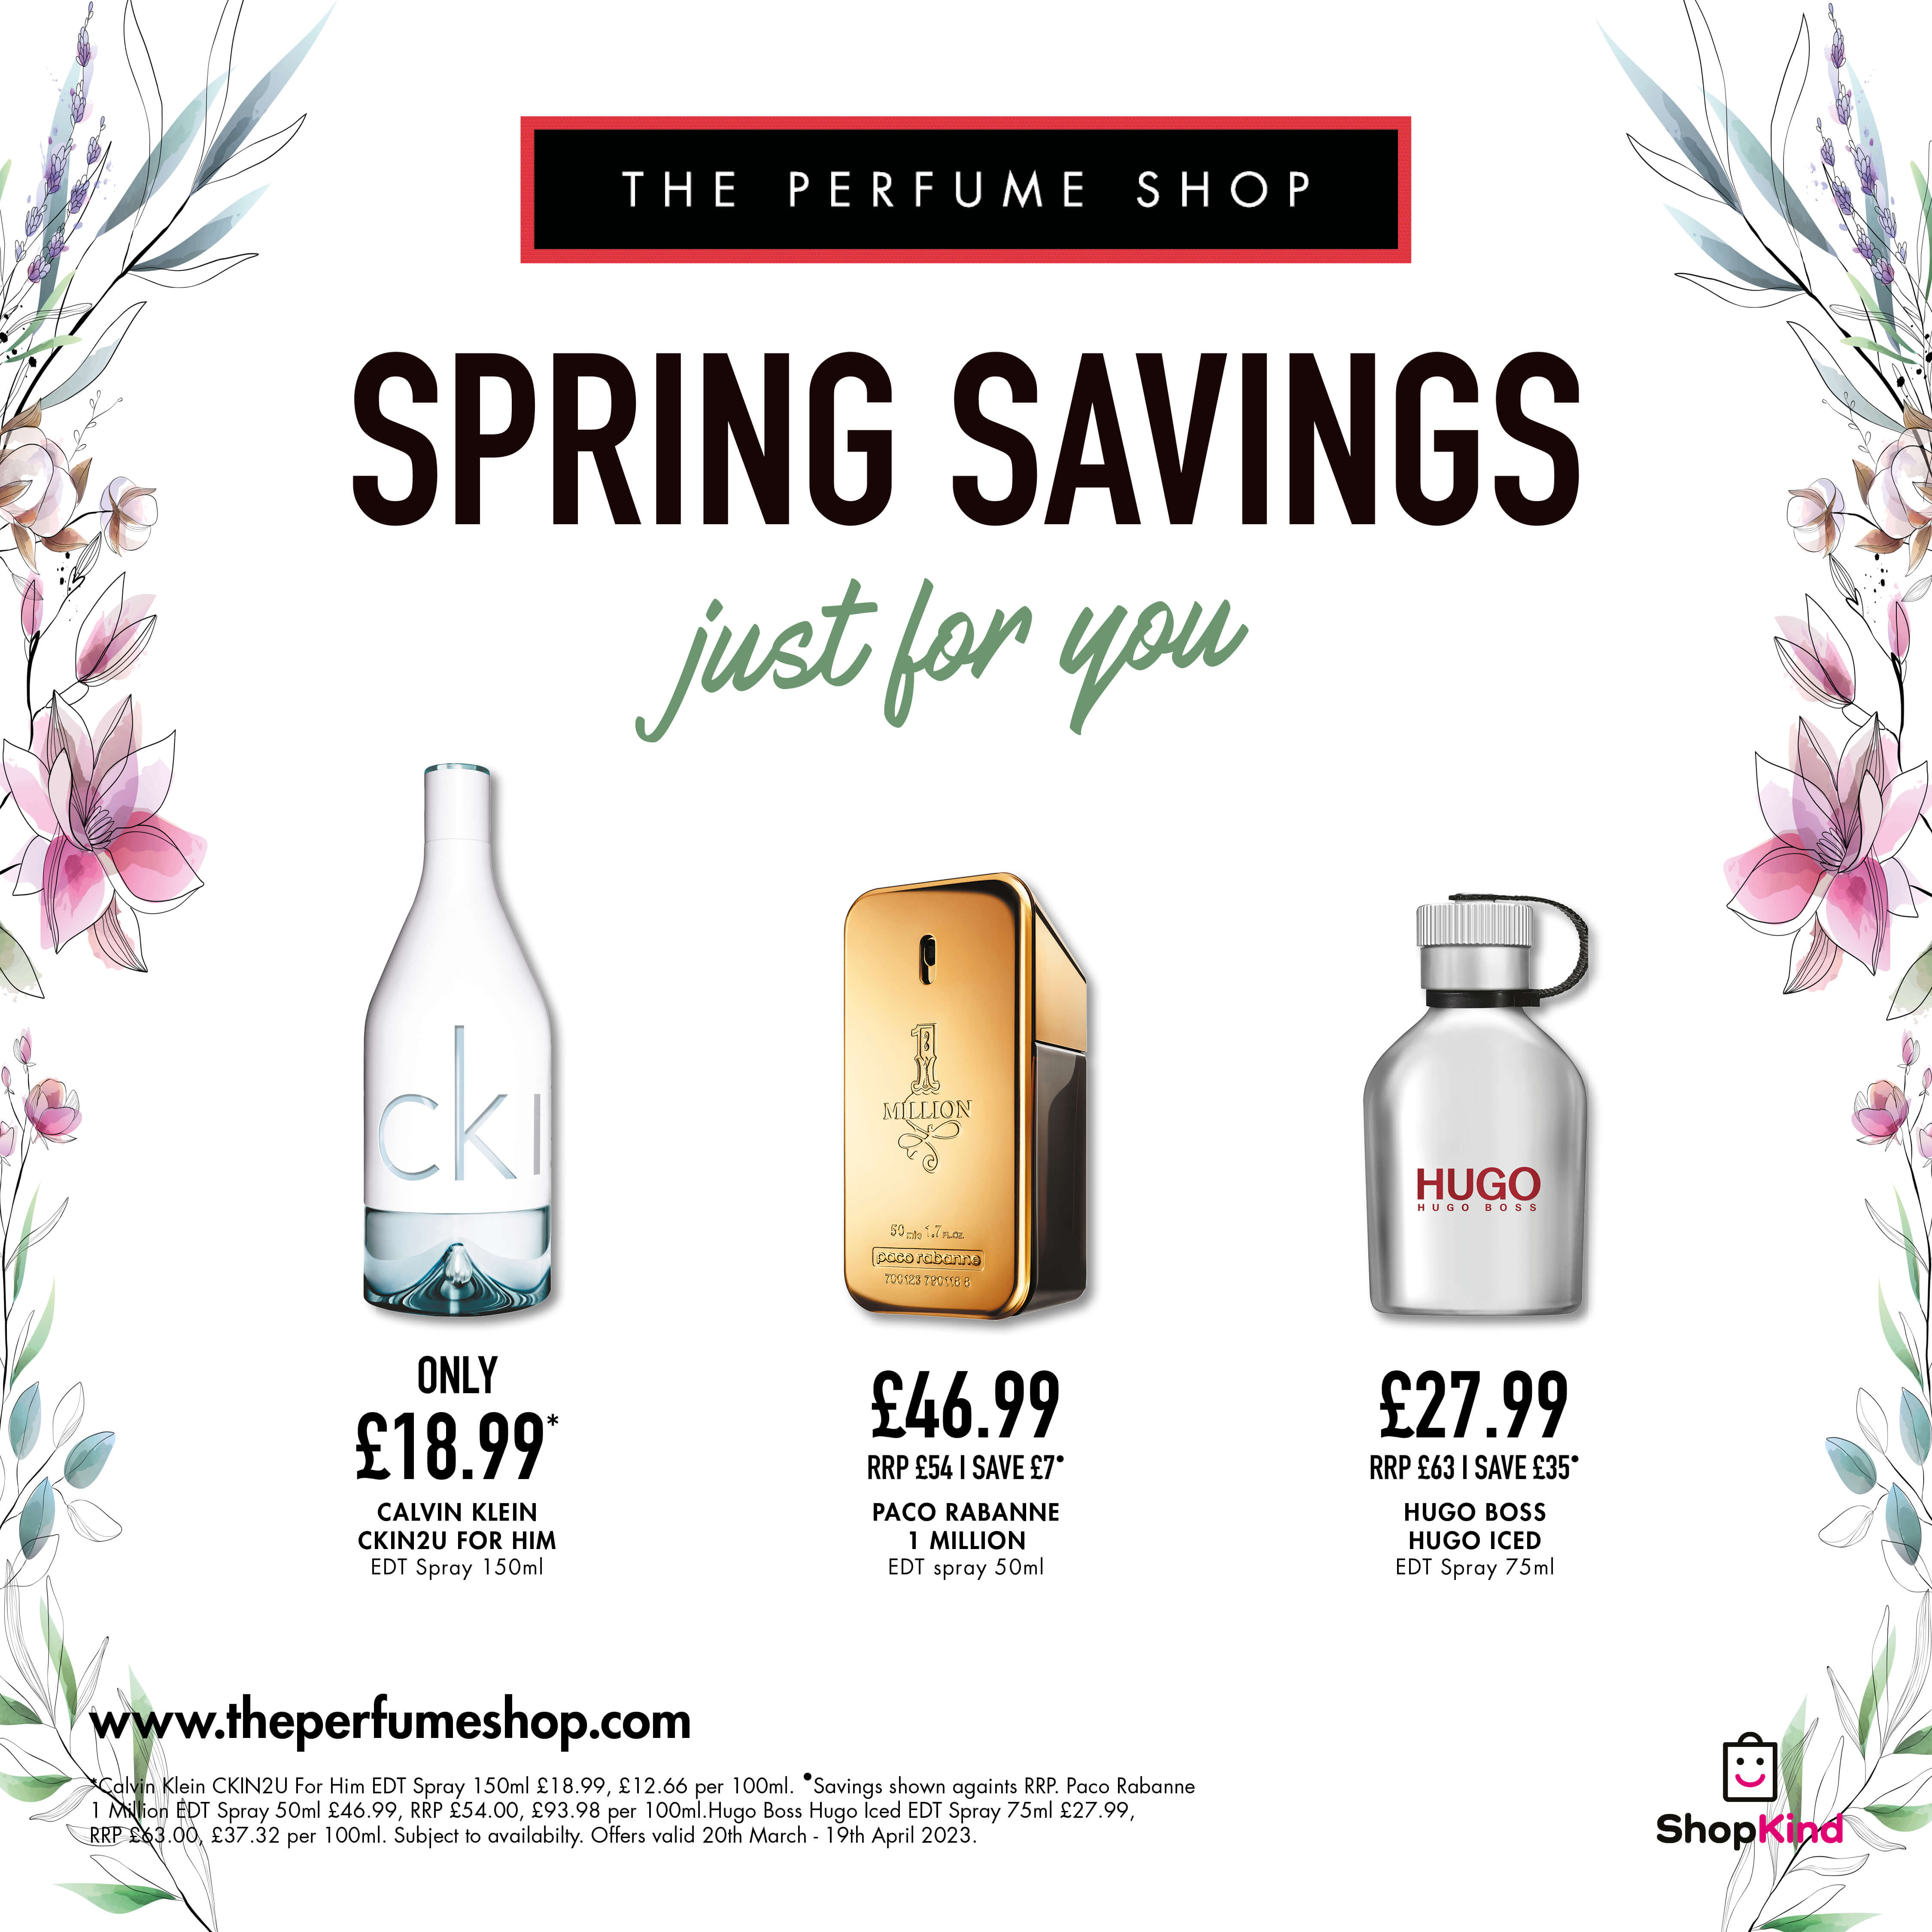 Spring savings at The Perfume Shop 